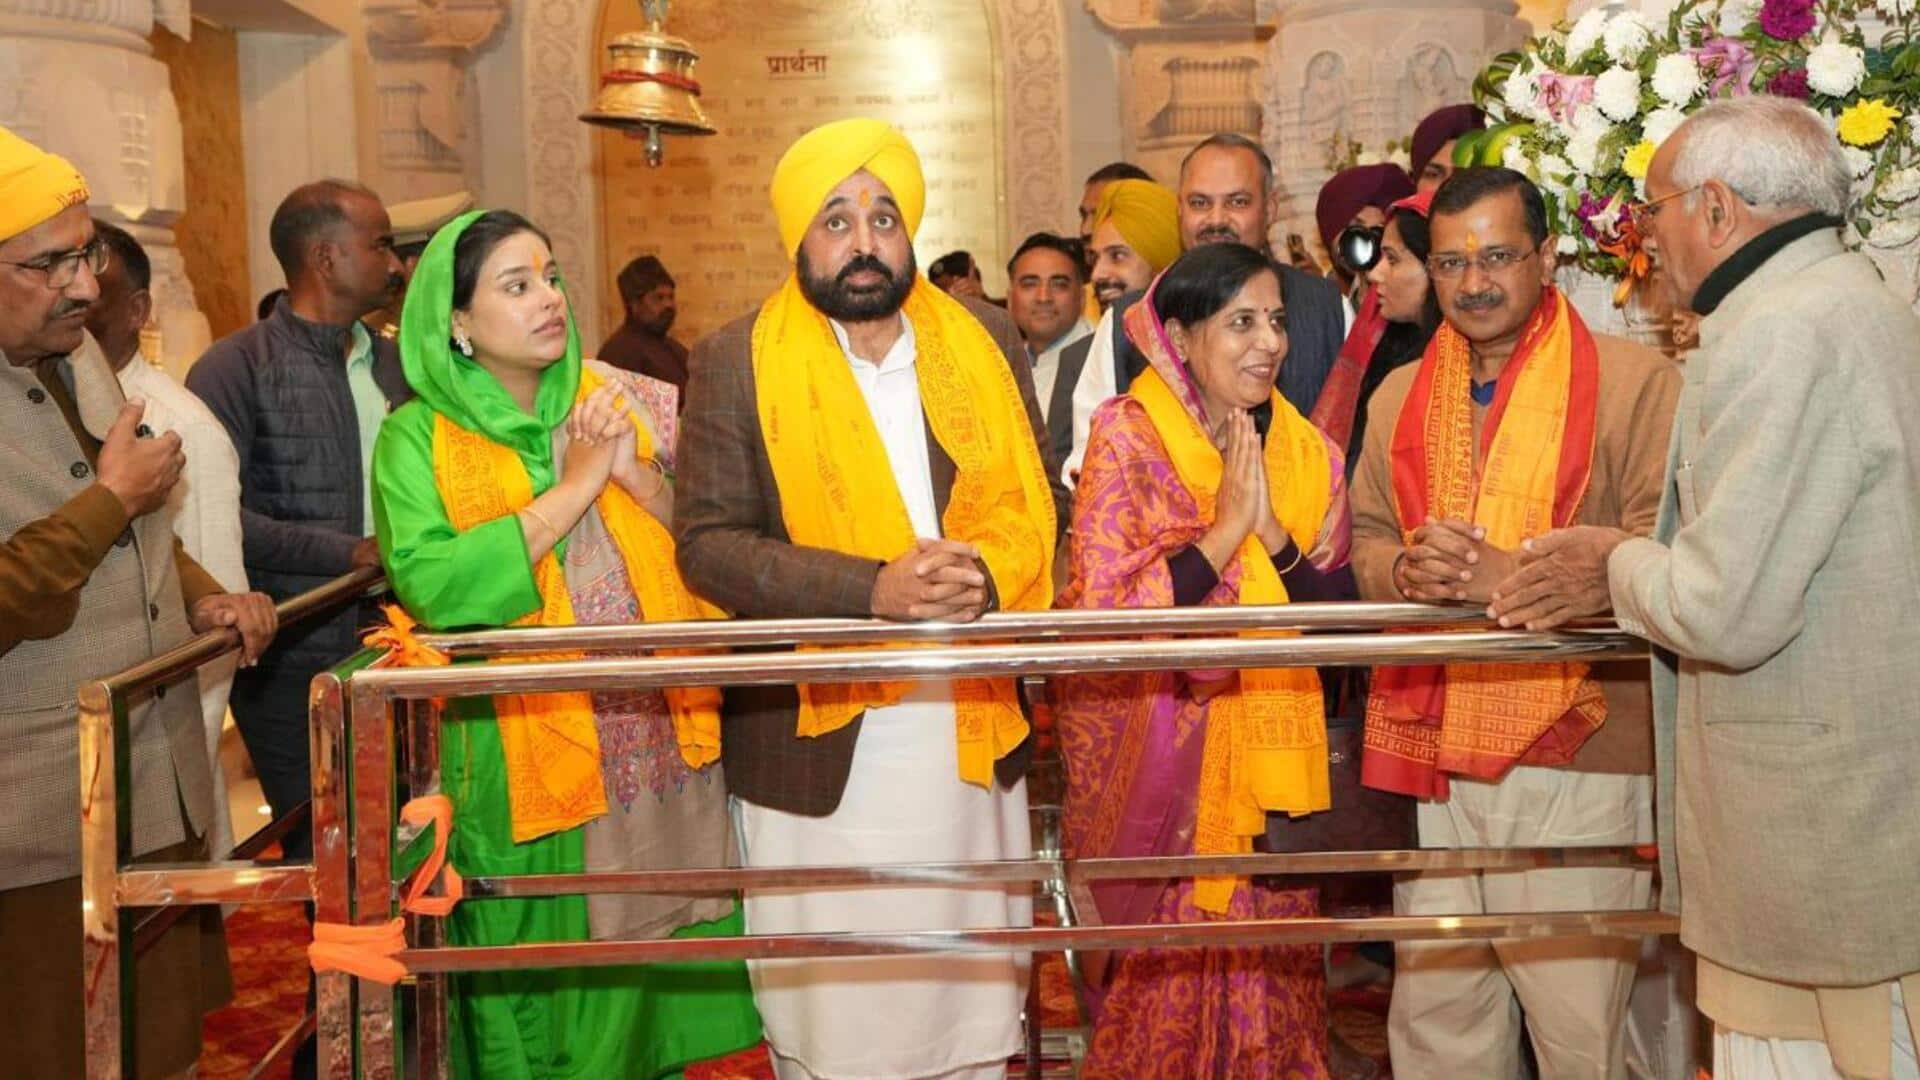 Ayodhya: అయోధ్యలోని రామాలయంలో అరవింద్ కేజ్రీవాల్, భగవంత్ మాన్ పూజలు